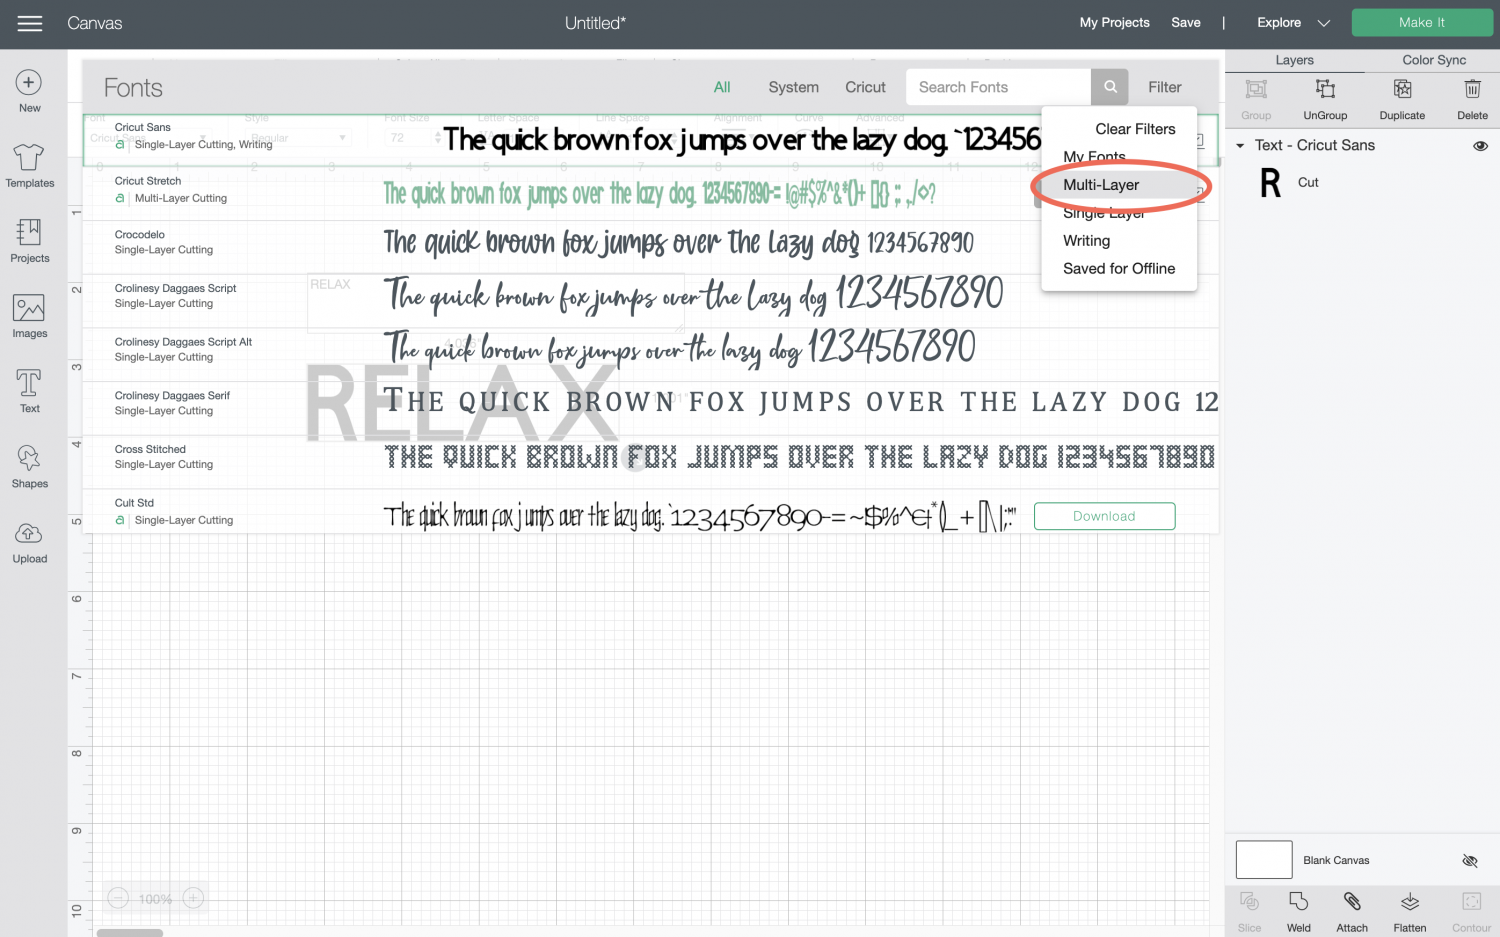 Cricut Design Space: Font dropdown menu showing multi-layer fonts selected